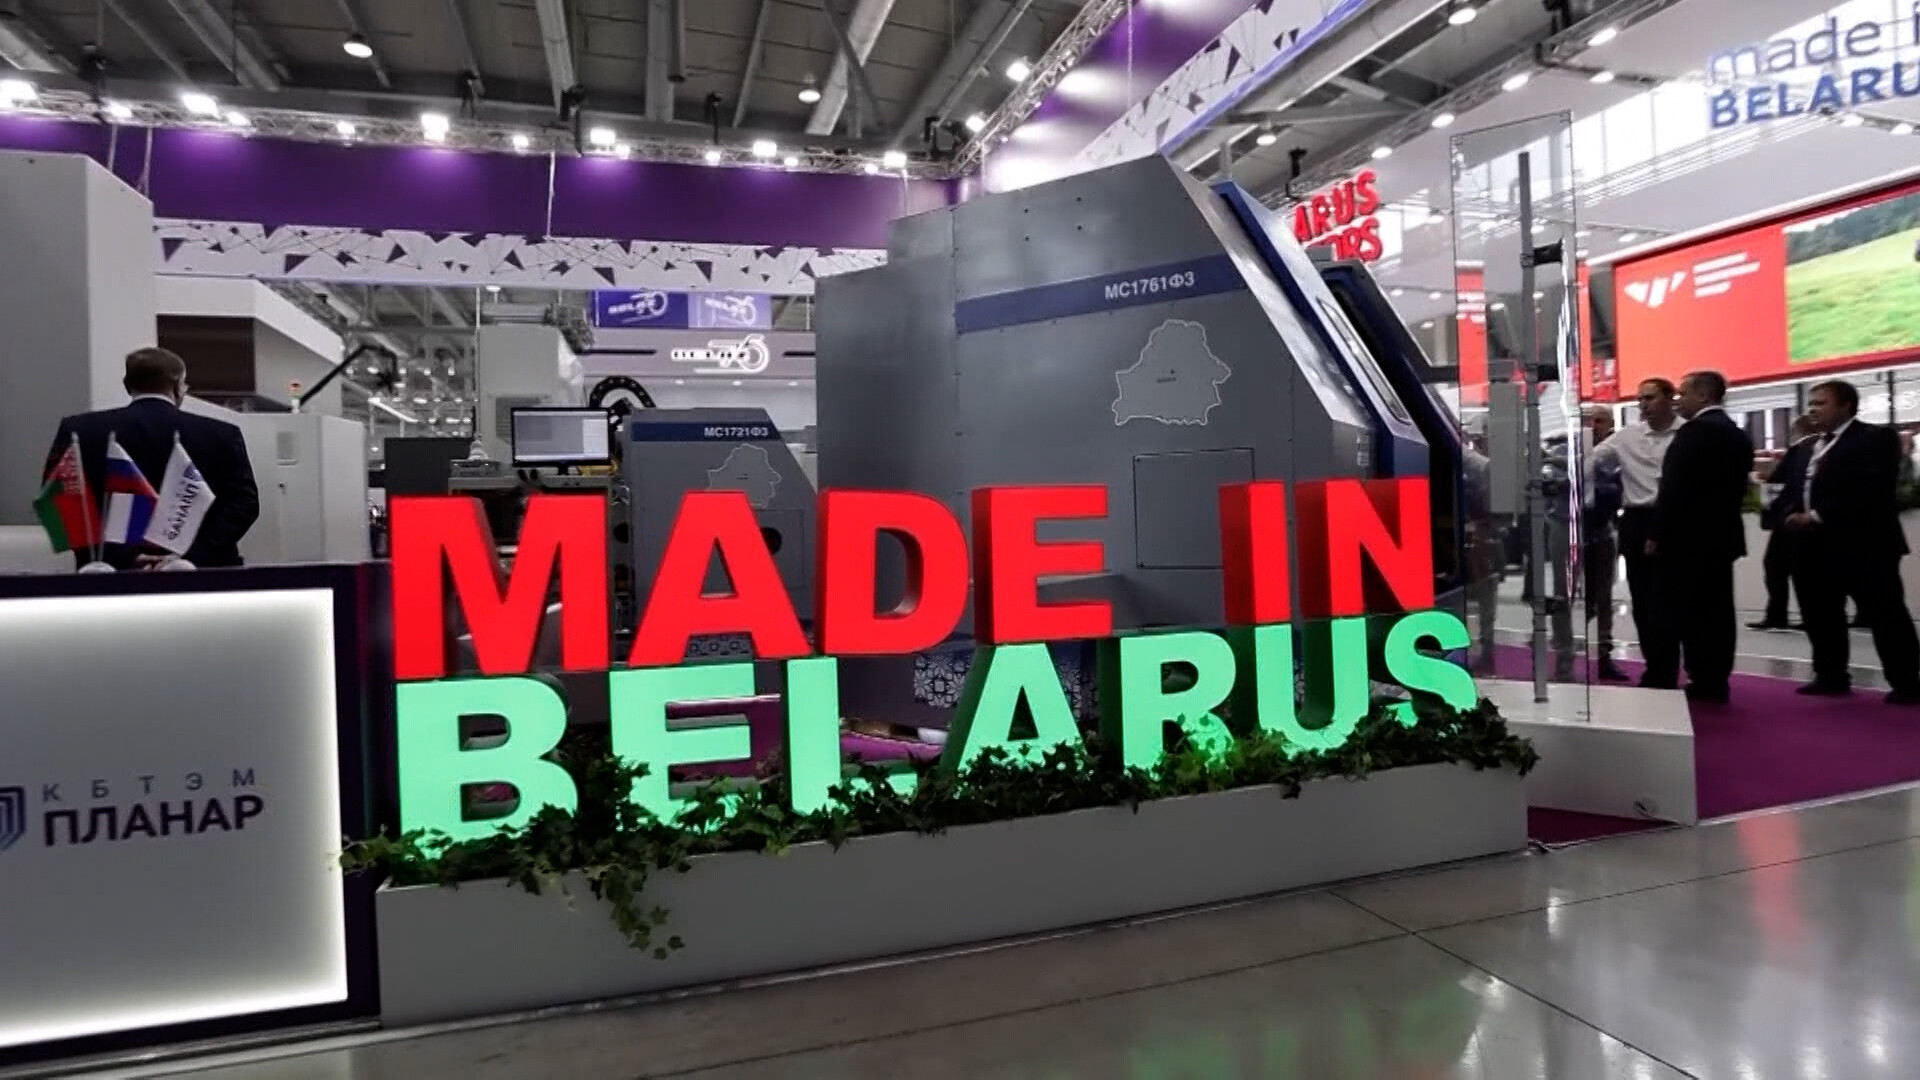 Лайнеры для гражданской авиации начнут производить в Беларуси